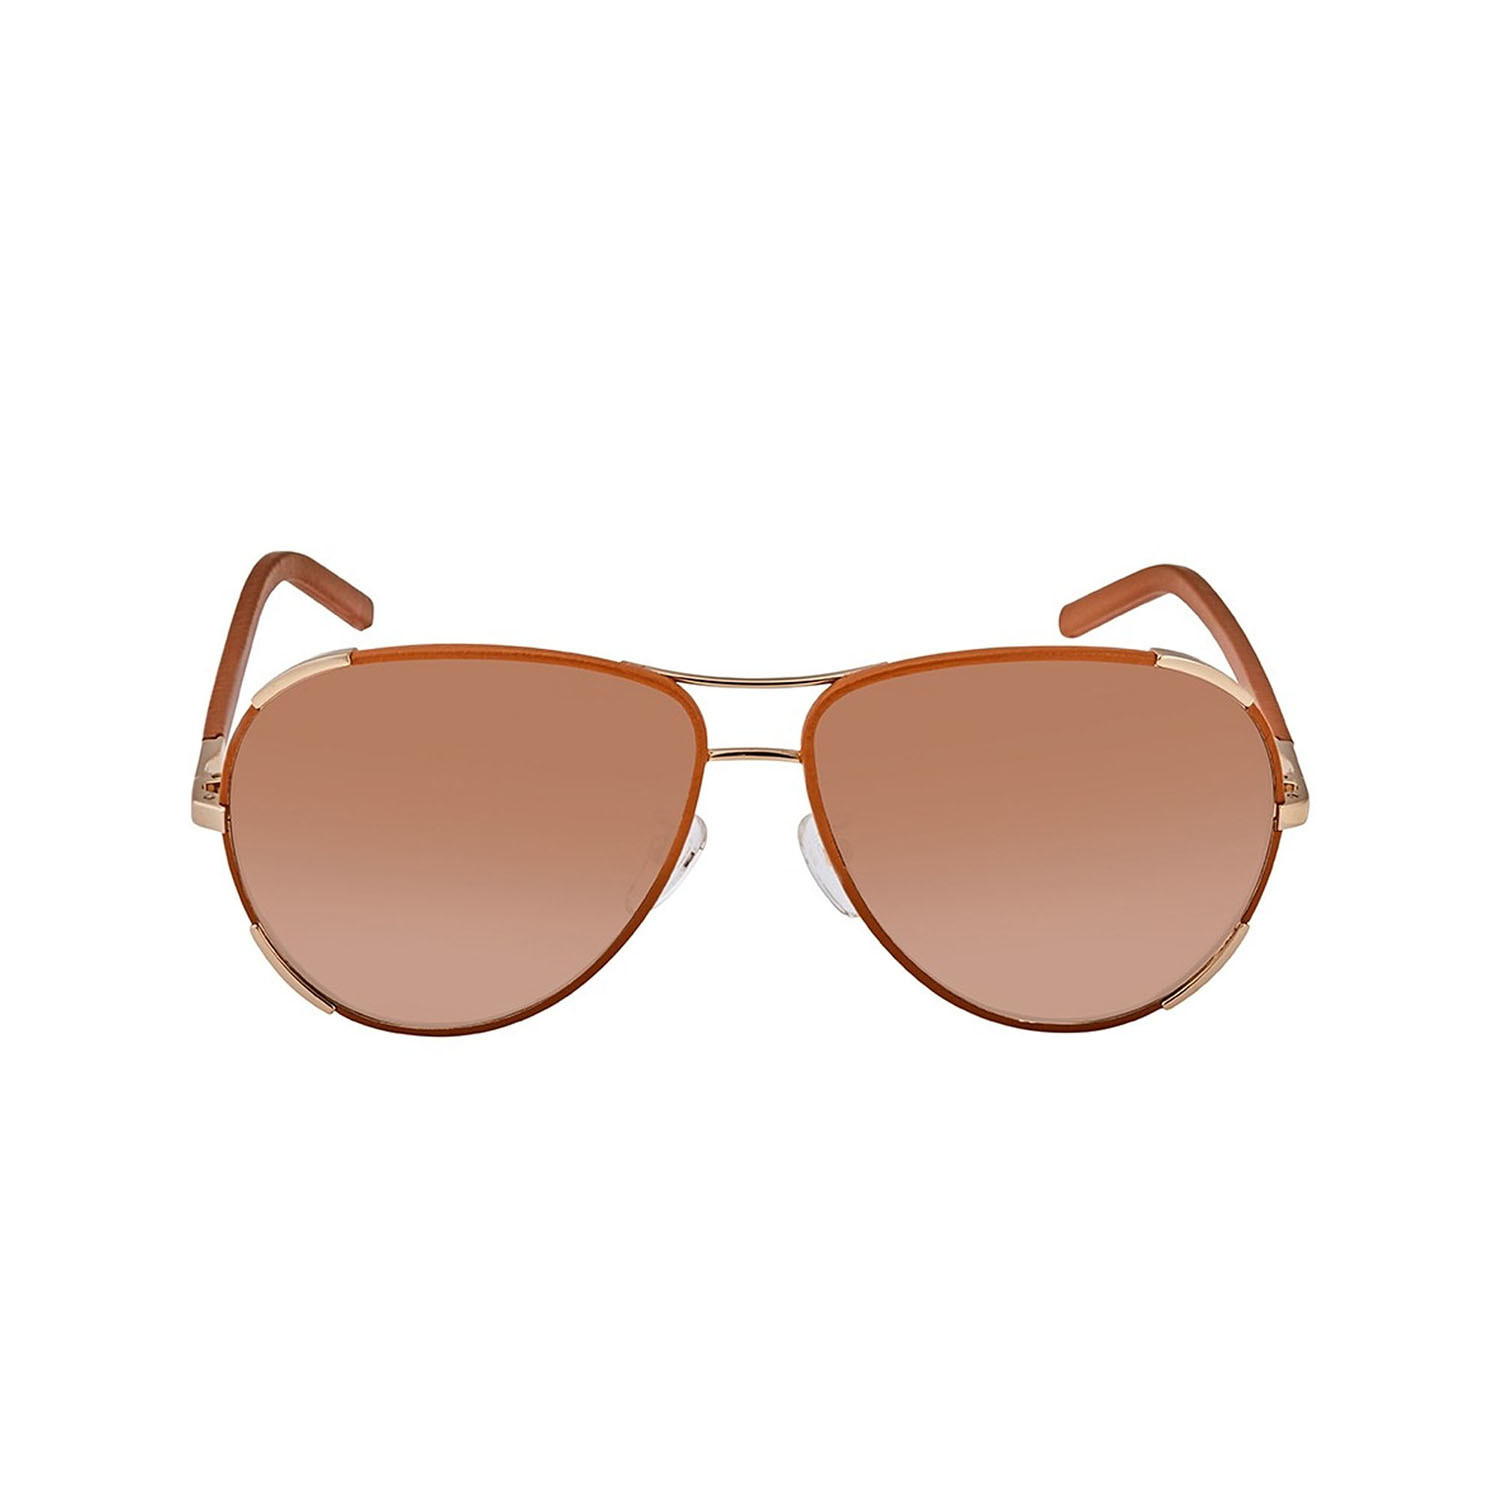 Chloe // Women's Sunglasses // Gold + Light Brown - Women's Designer